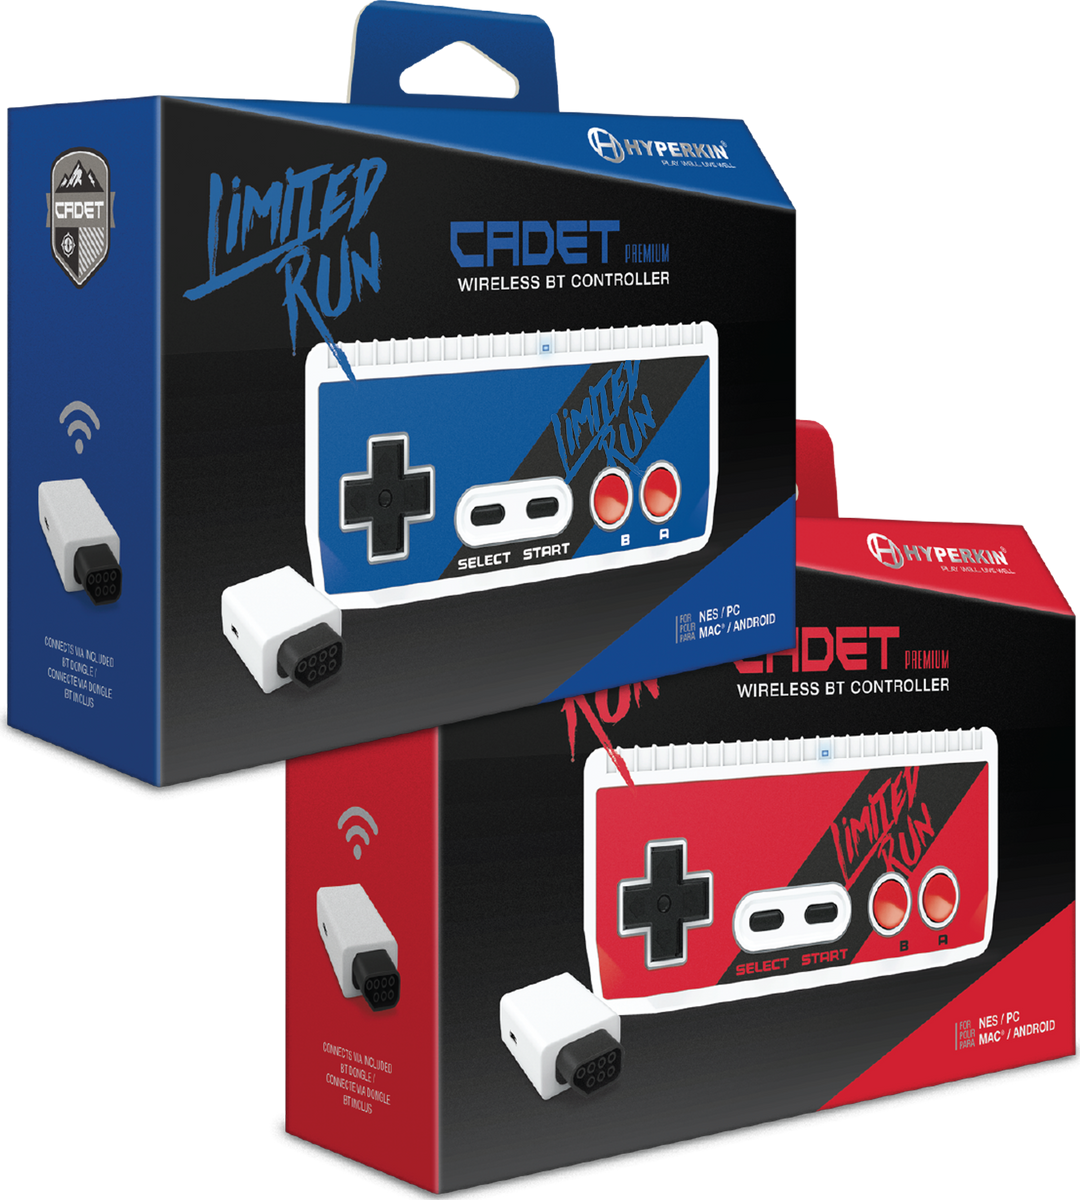 squat Gå rundt gradvist Limited Run Hyperkin Cadet Wireless NES Controller (Red/Blue) – Limited Run  Games